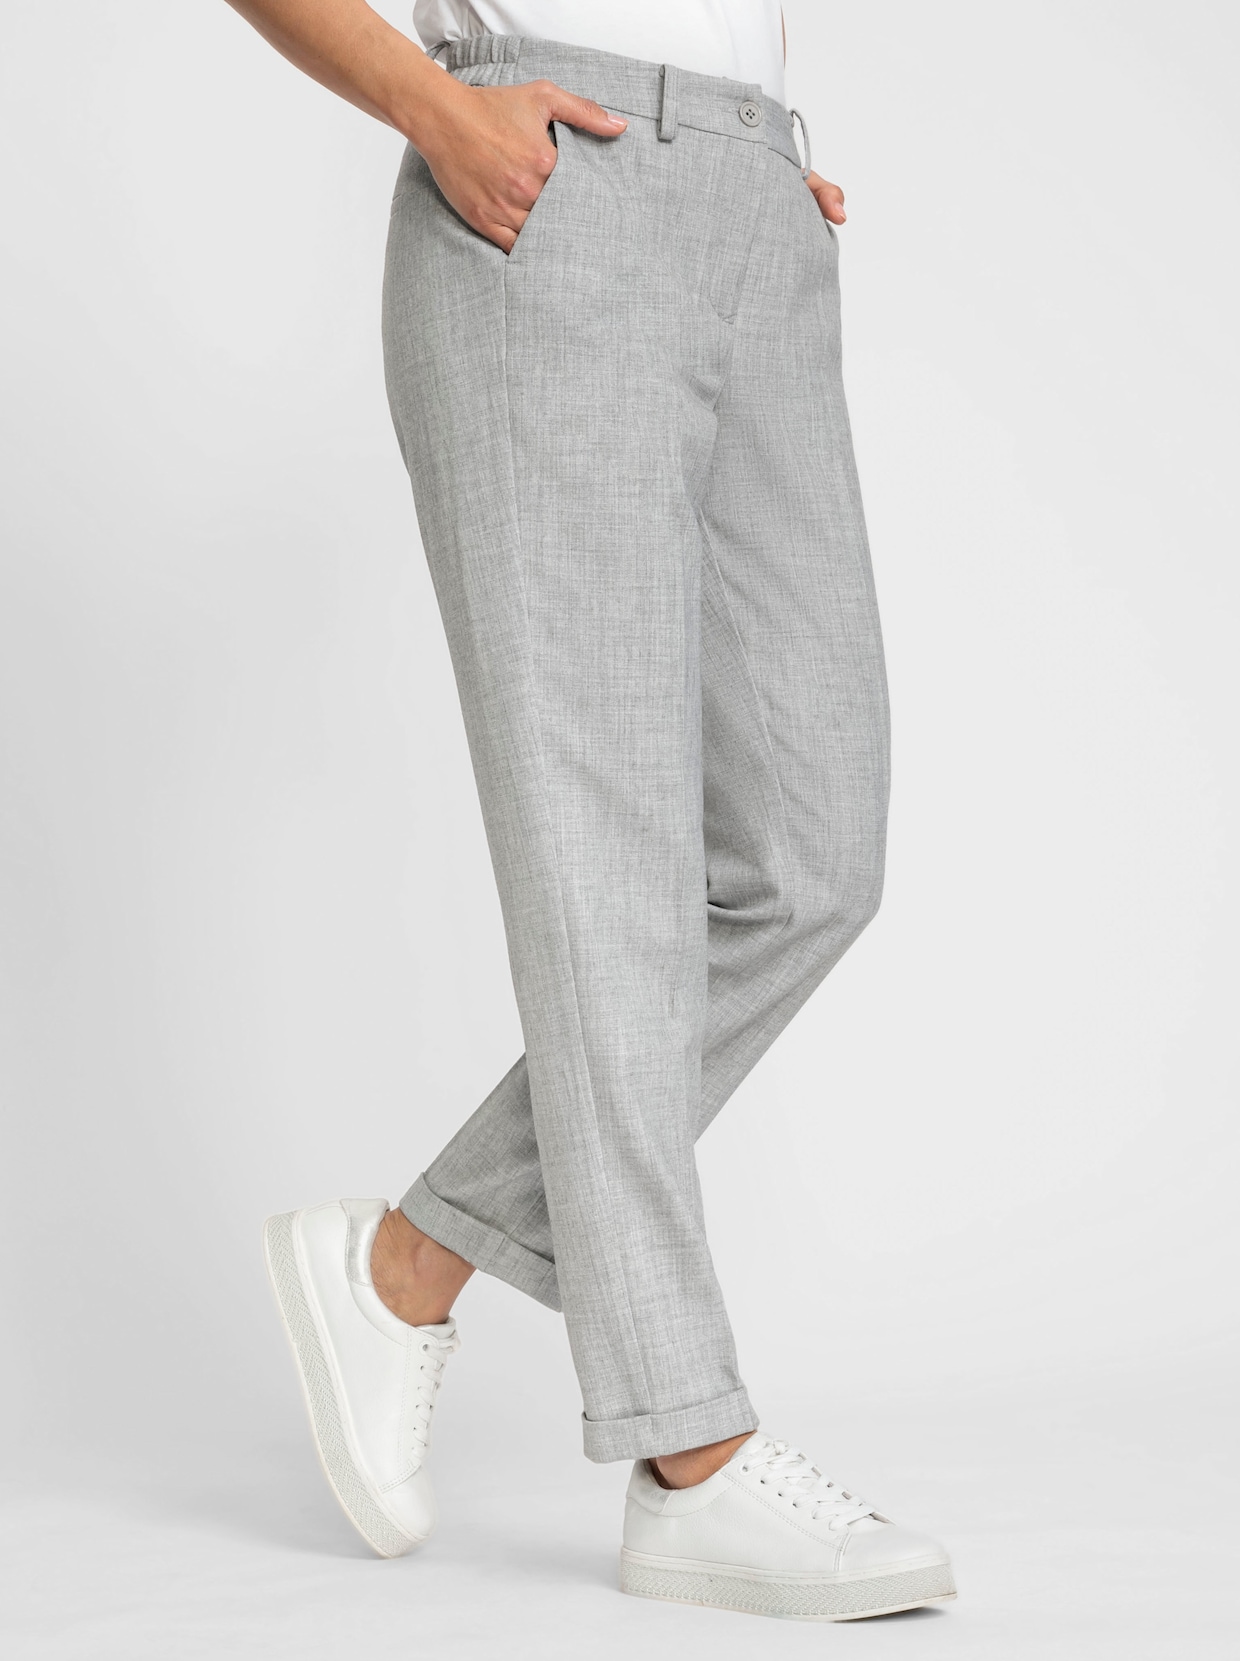 Pantalon - gris clair chiné